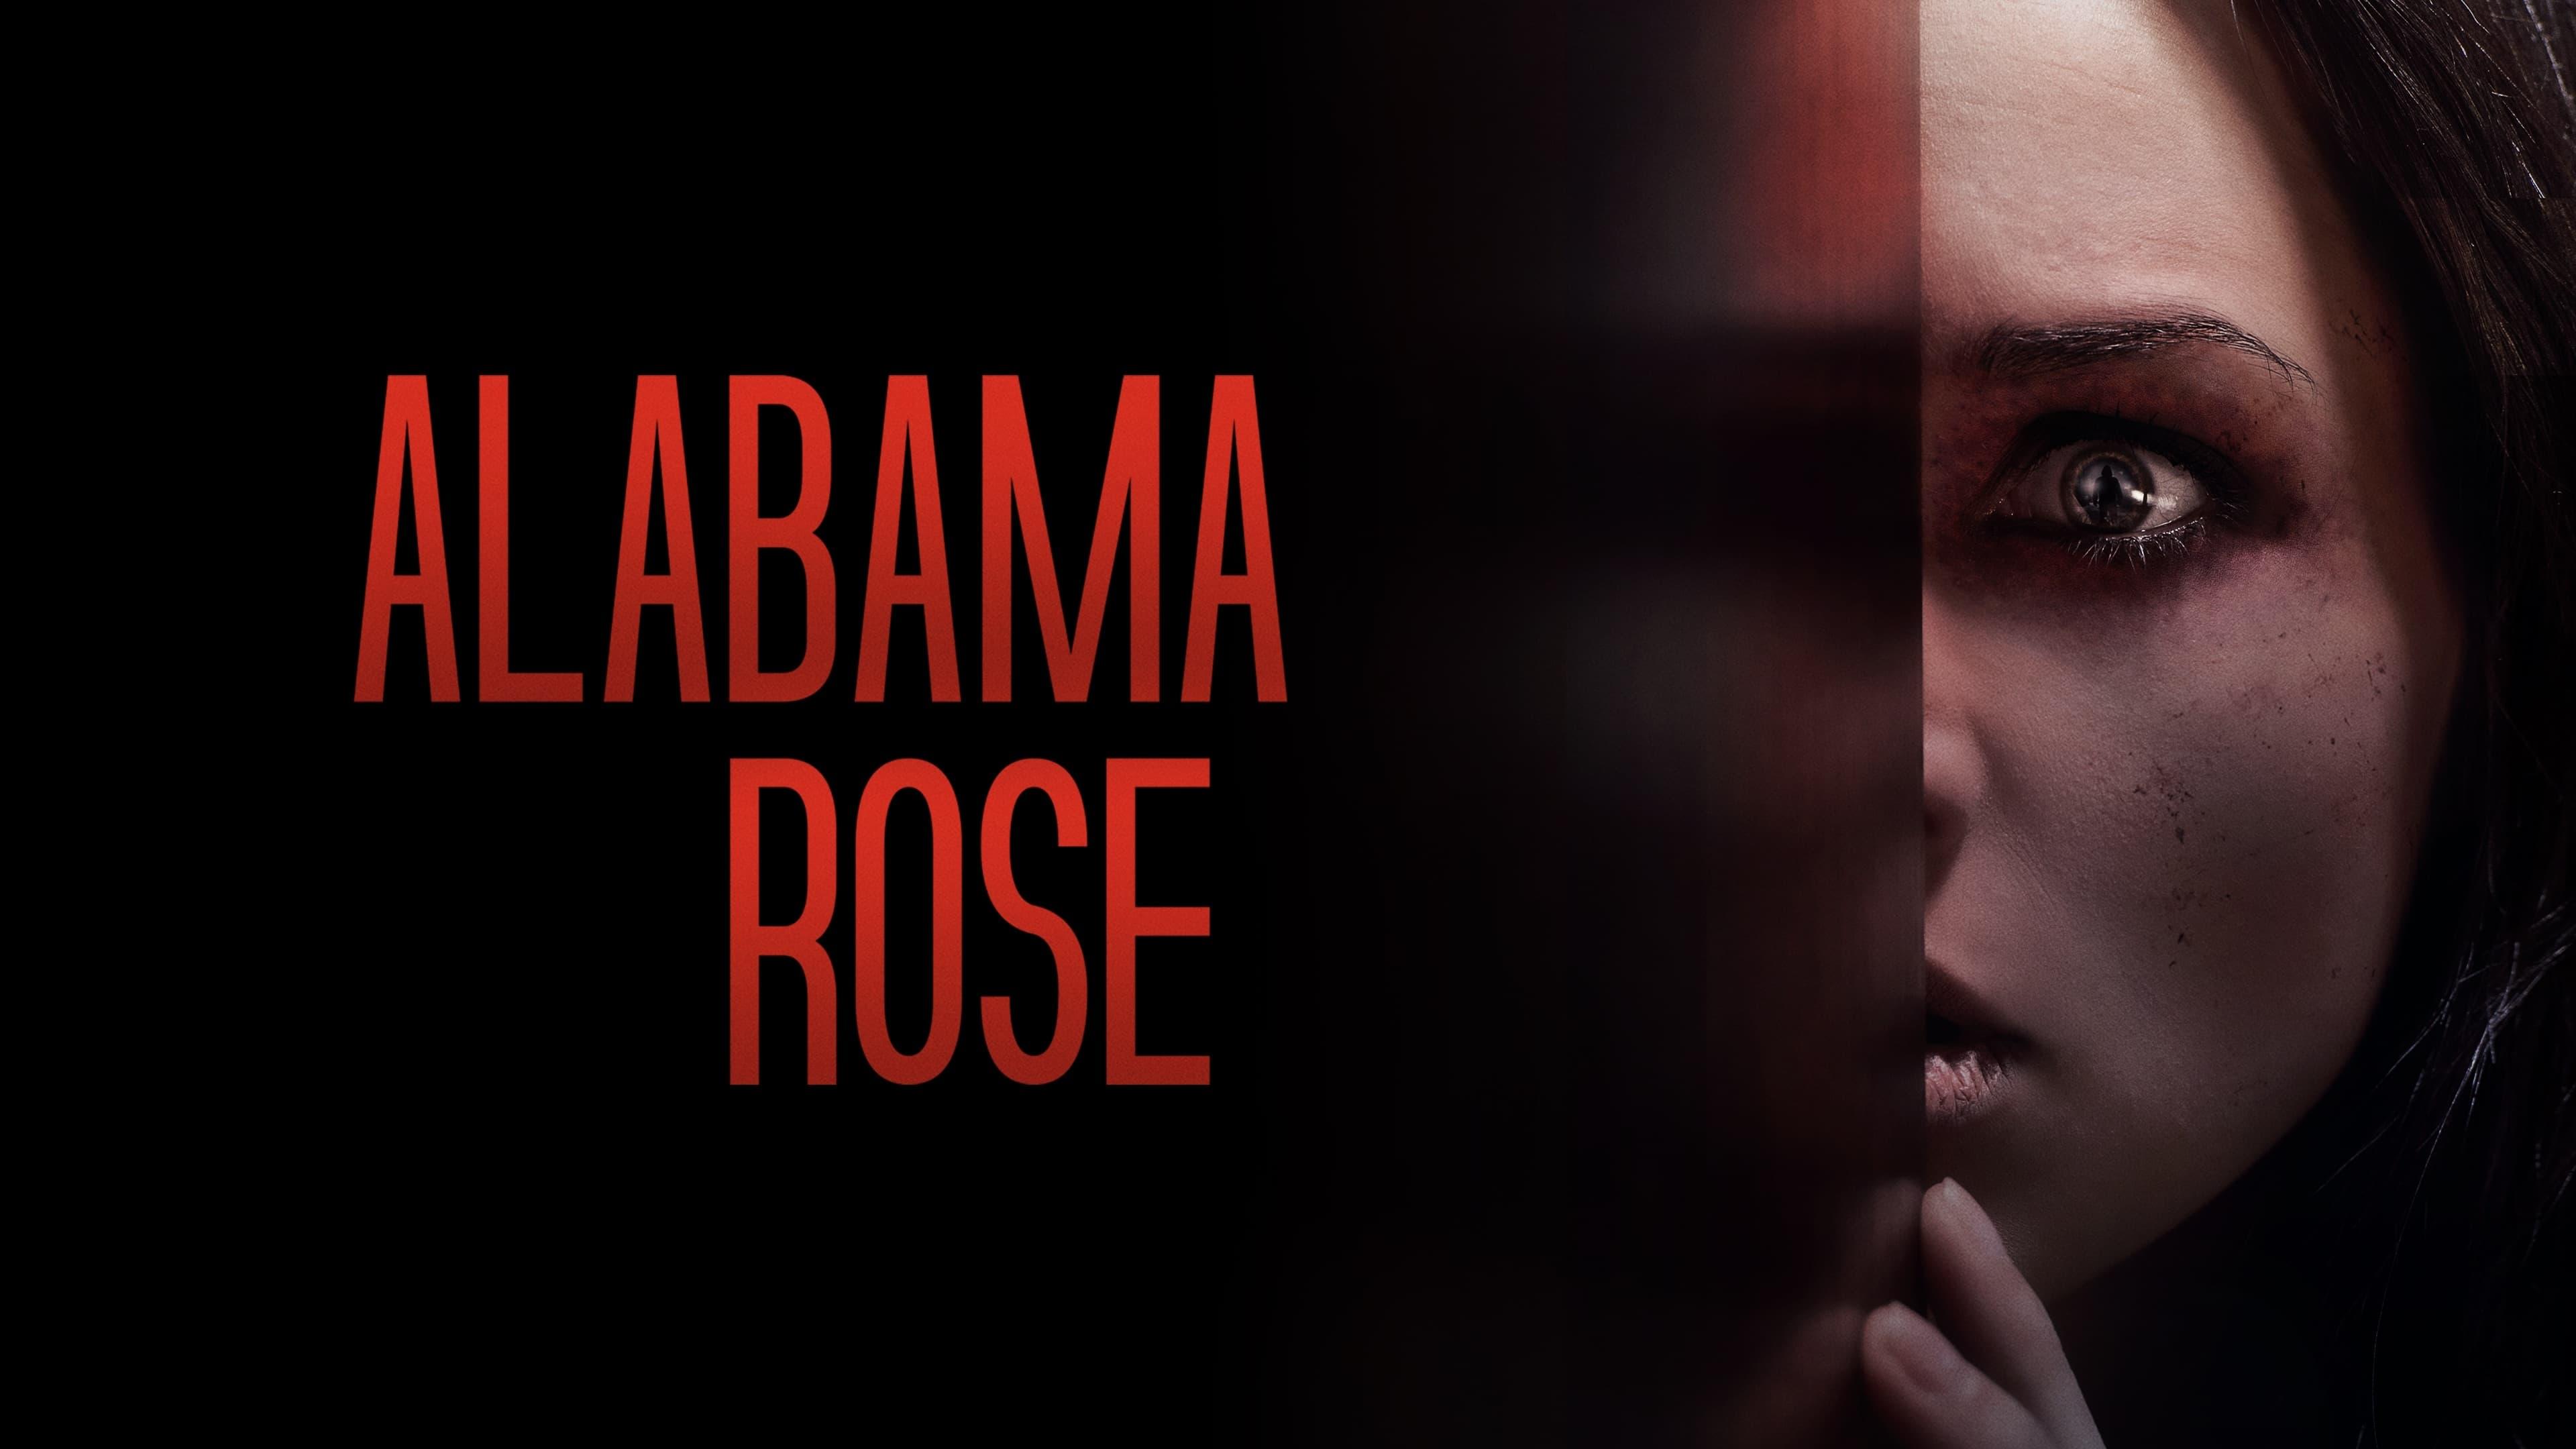 Alabama Rose backdrop